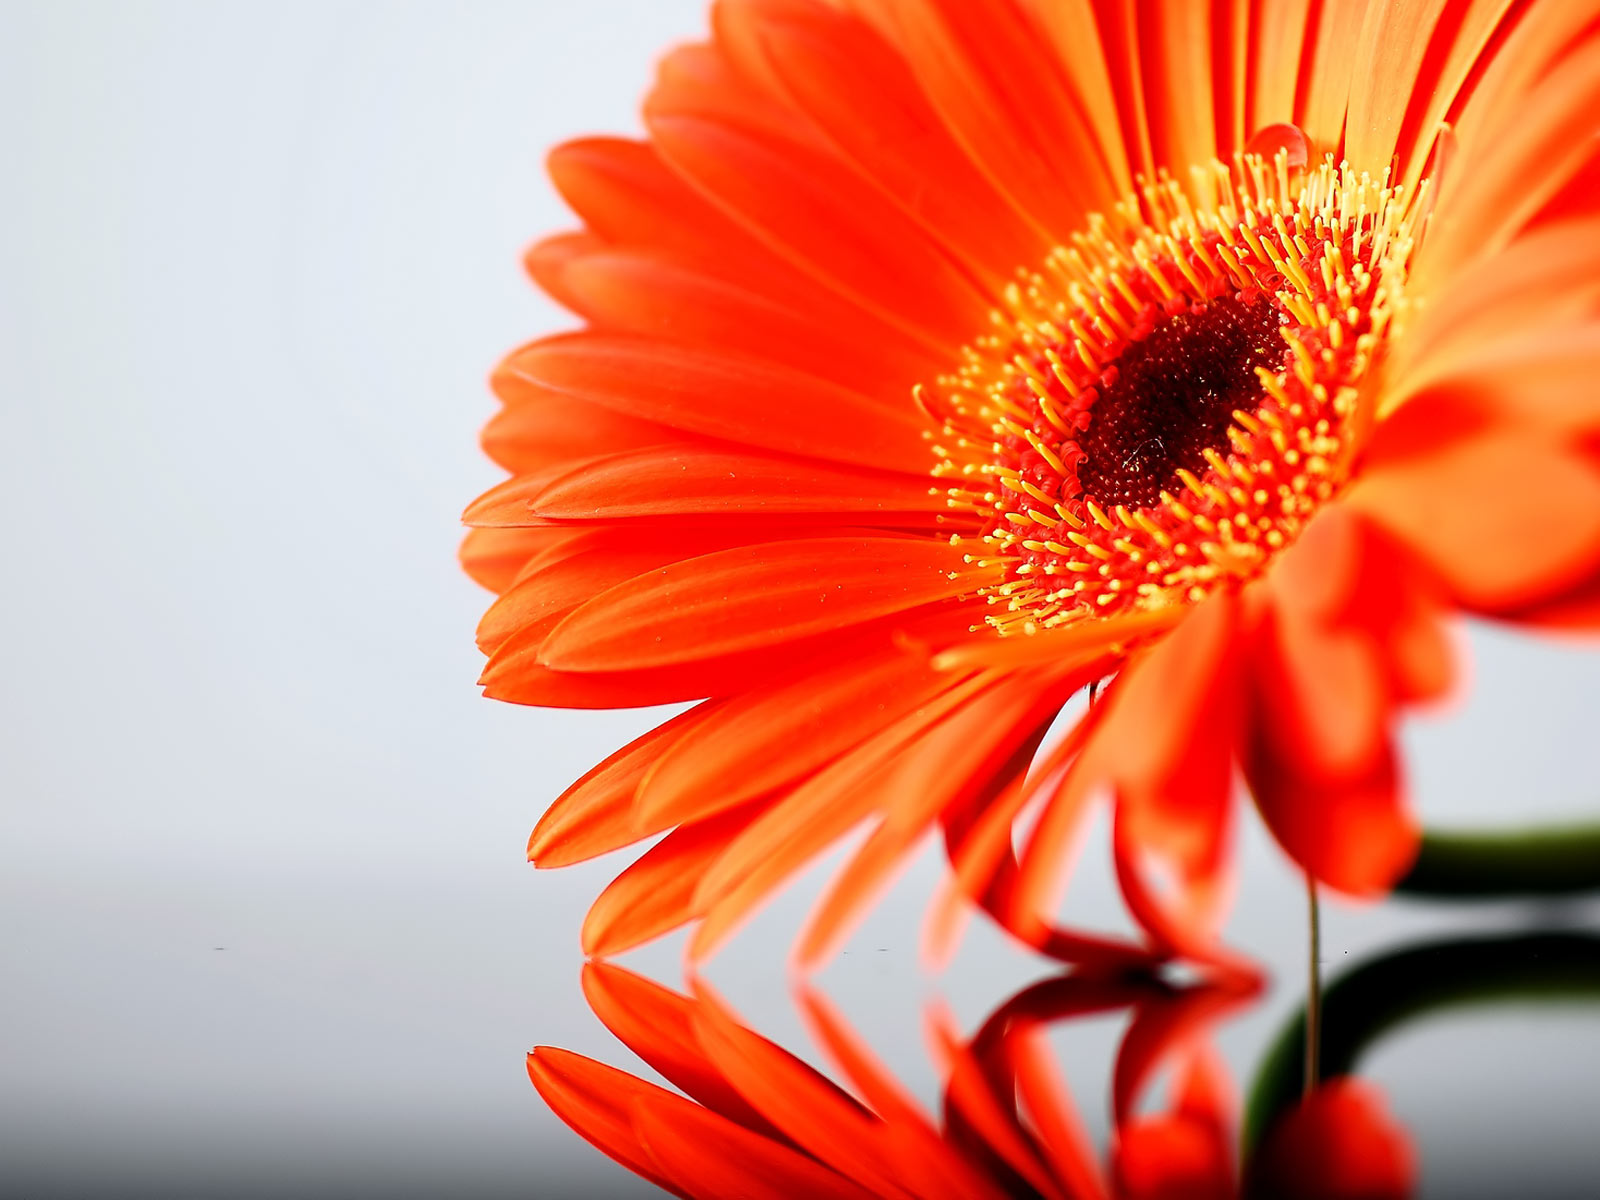 papier peint à fleurs orange,marguerite de barberton,orange,gerbera,fleur,pétale